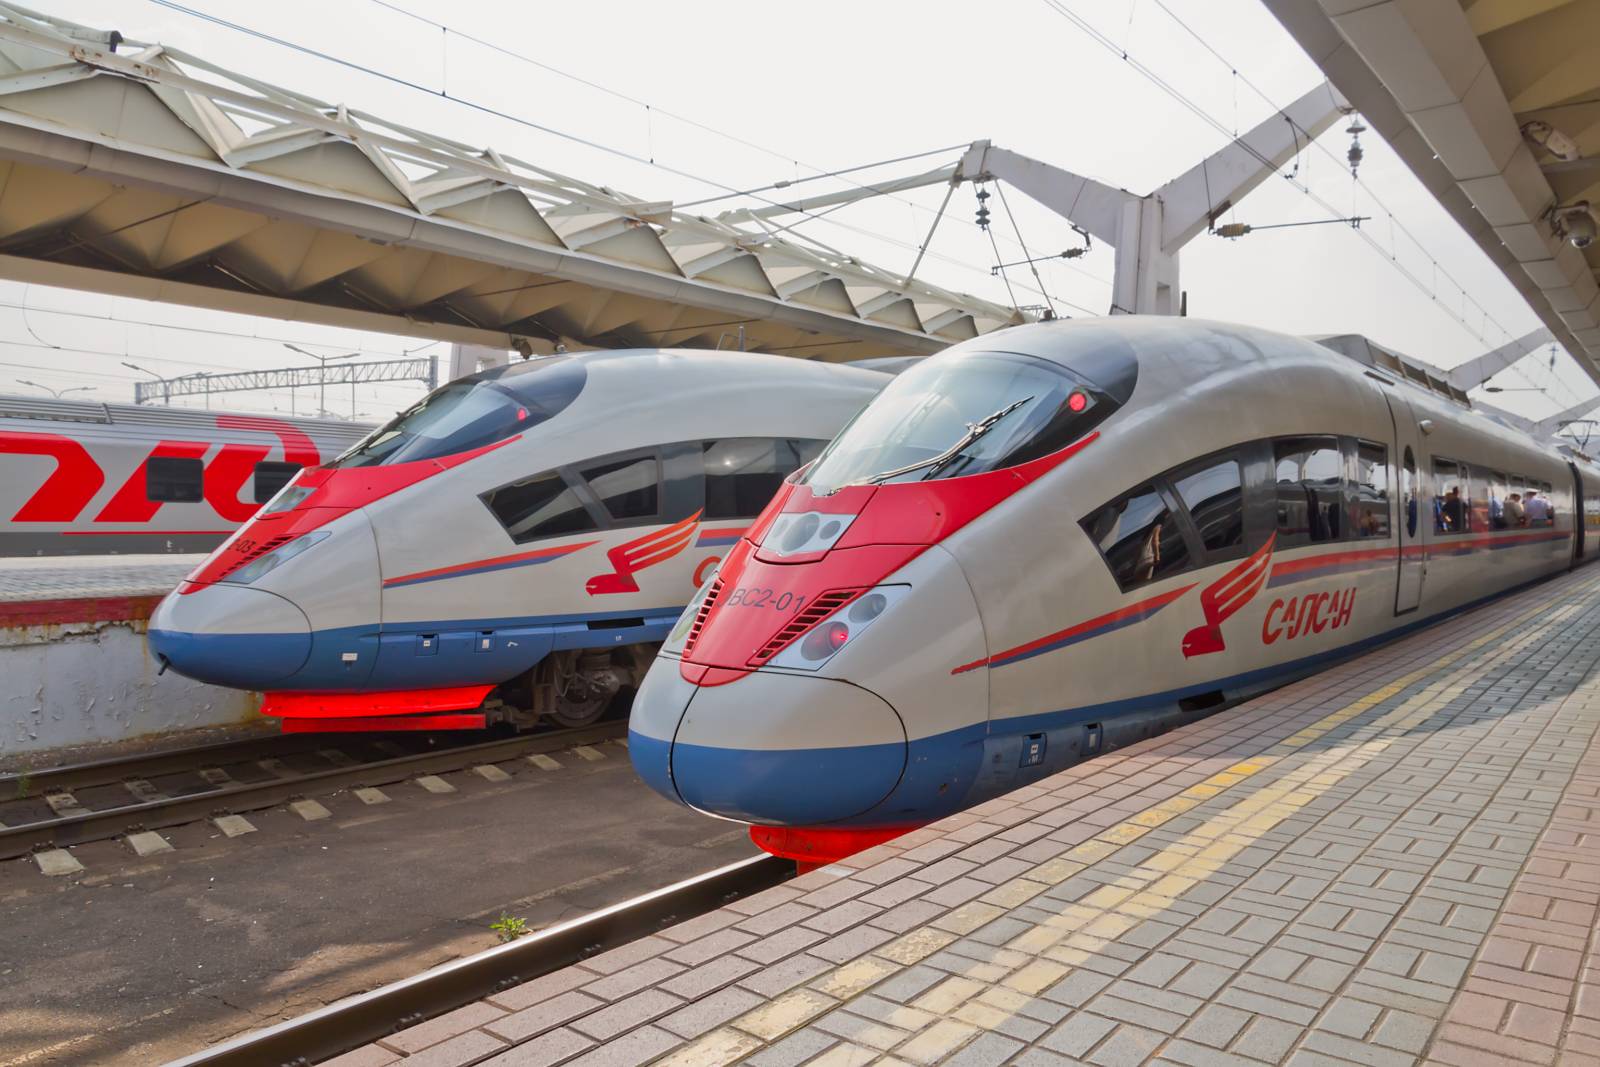 Более 200 высокоскоростных поездов будут задействованы на четырех ВСМ